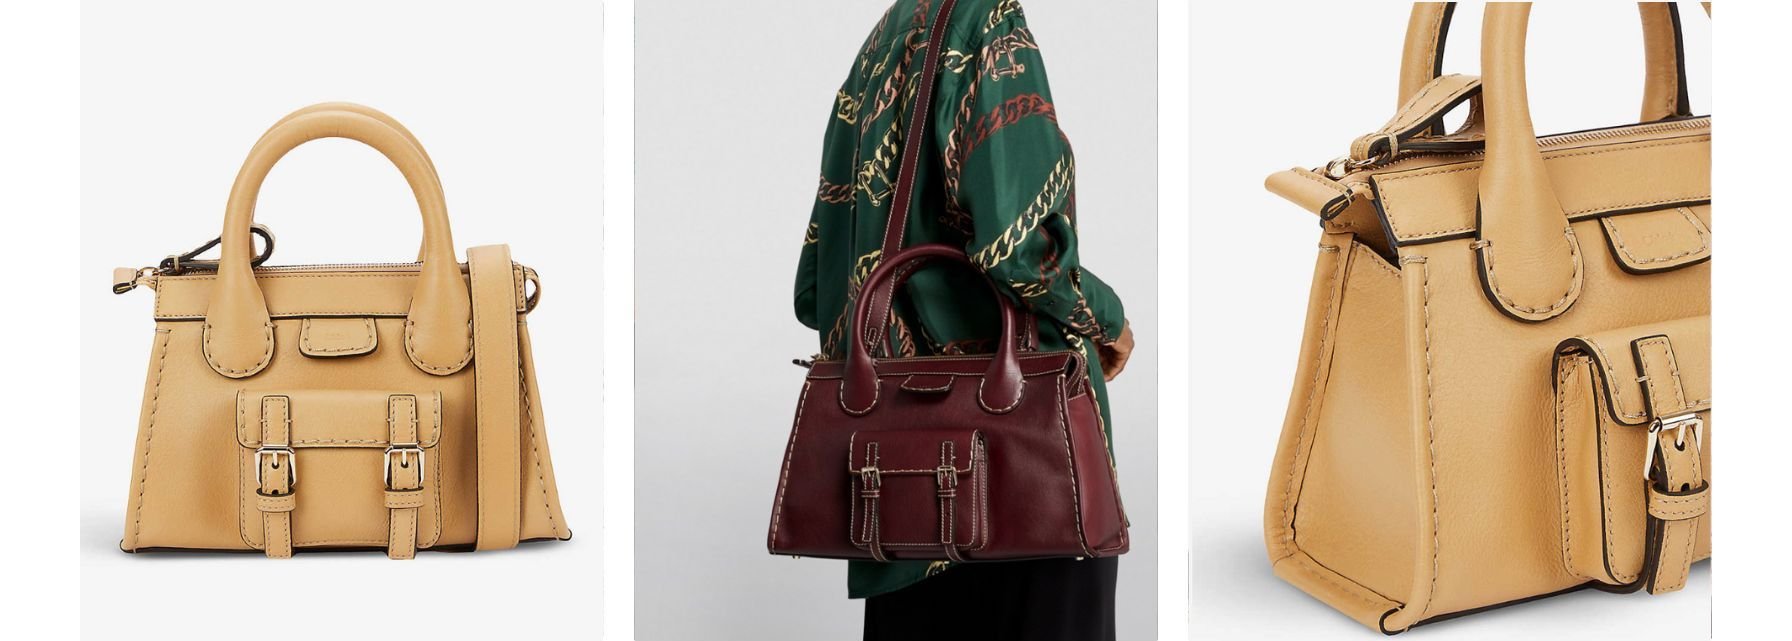 shop the Chloe edith as an alternative to the hermes birkin at the handbag clinic